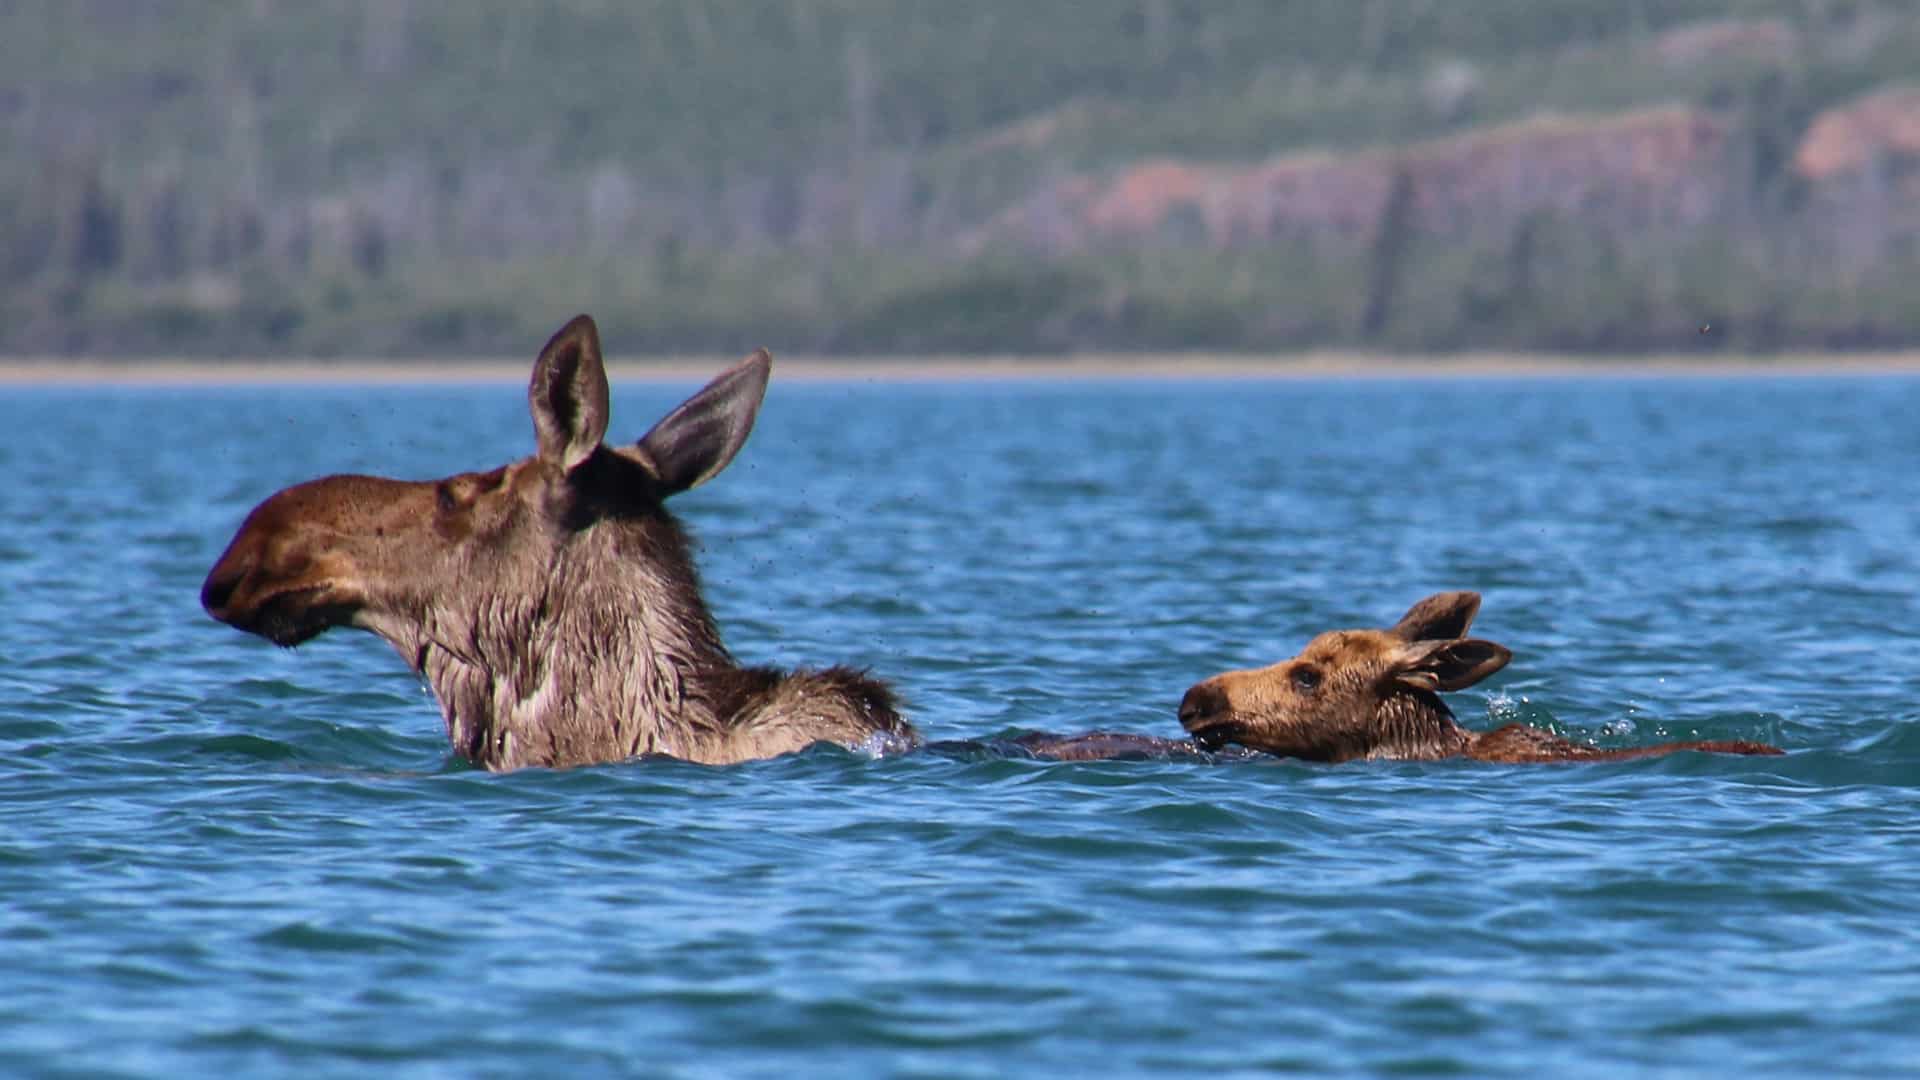 Yukon River, Eventyrlige Yukon, foredrag, Erik B. Jørgensen, elgko med kalv svømmer over en sø